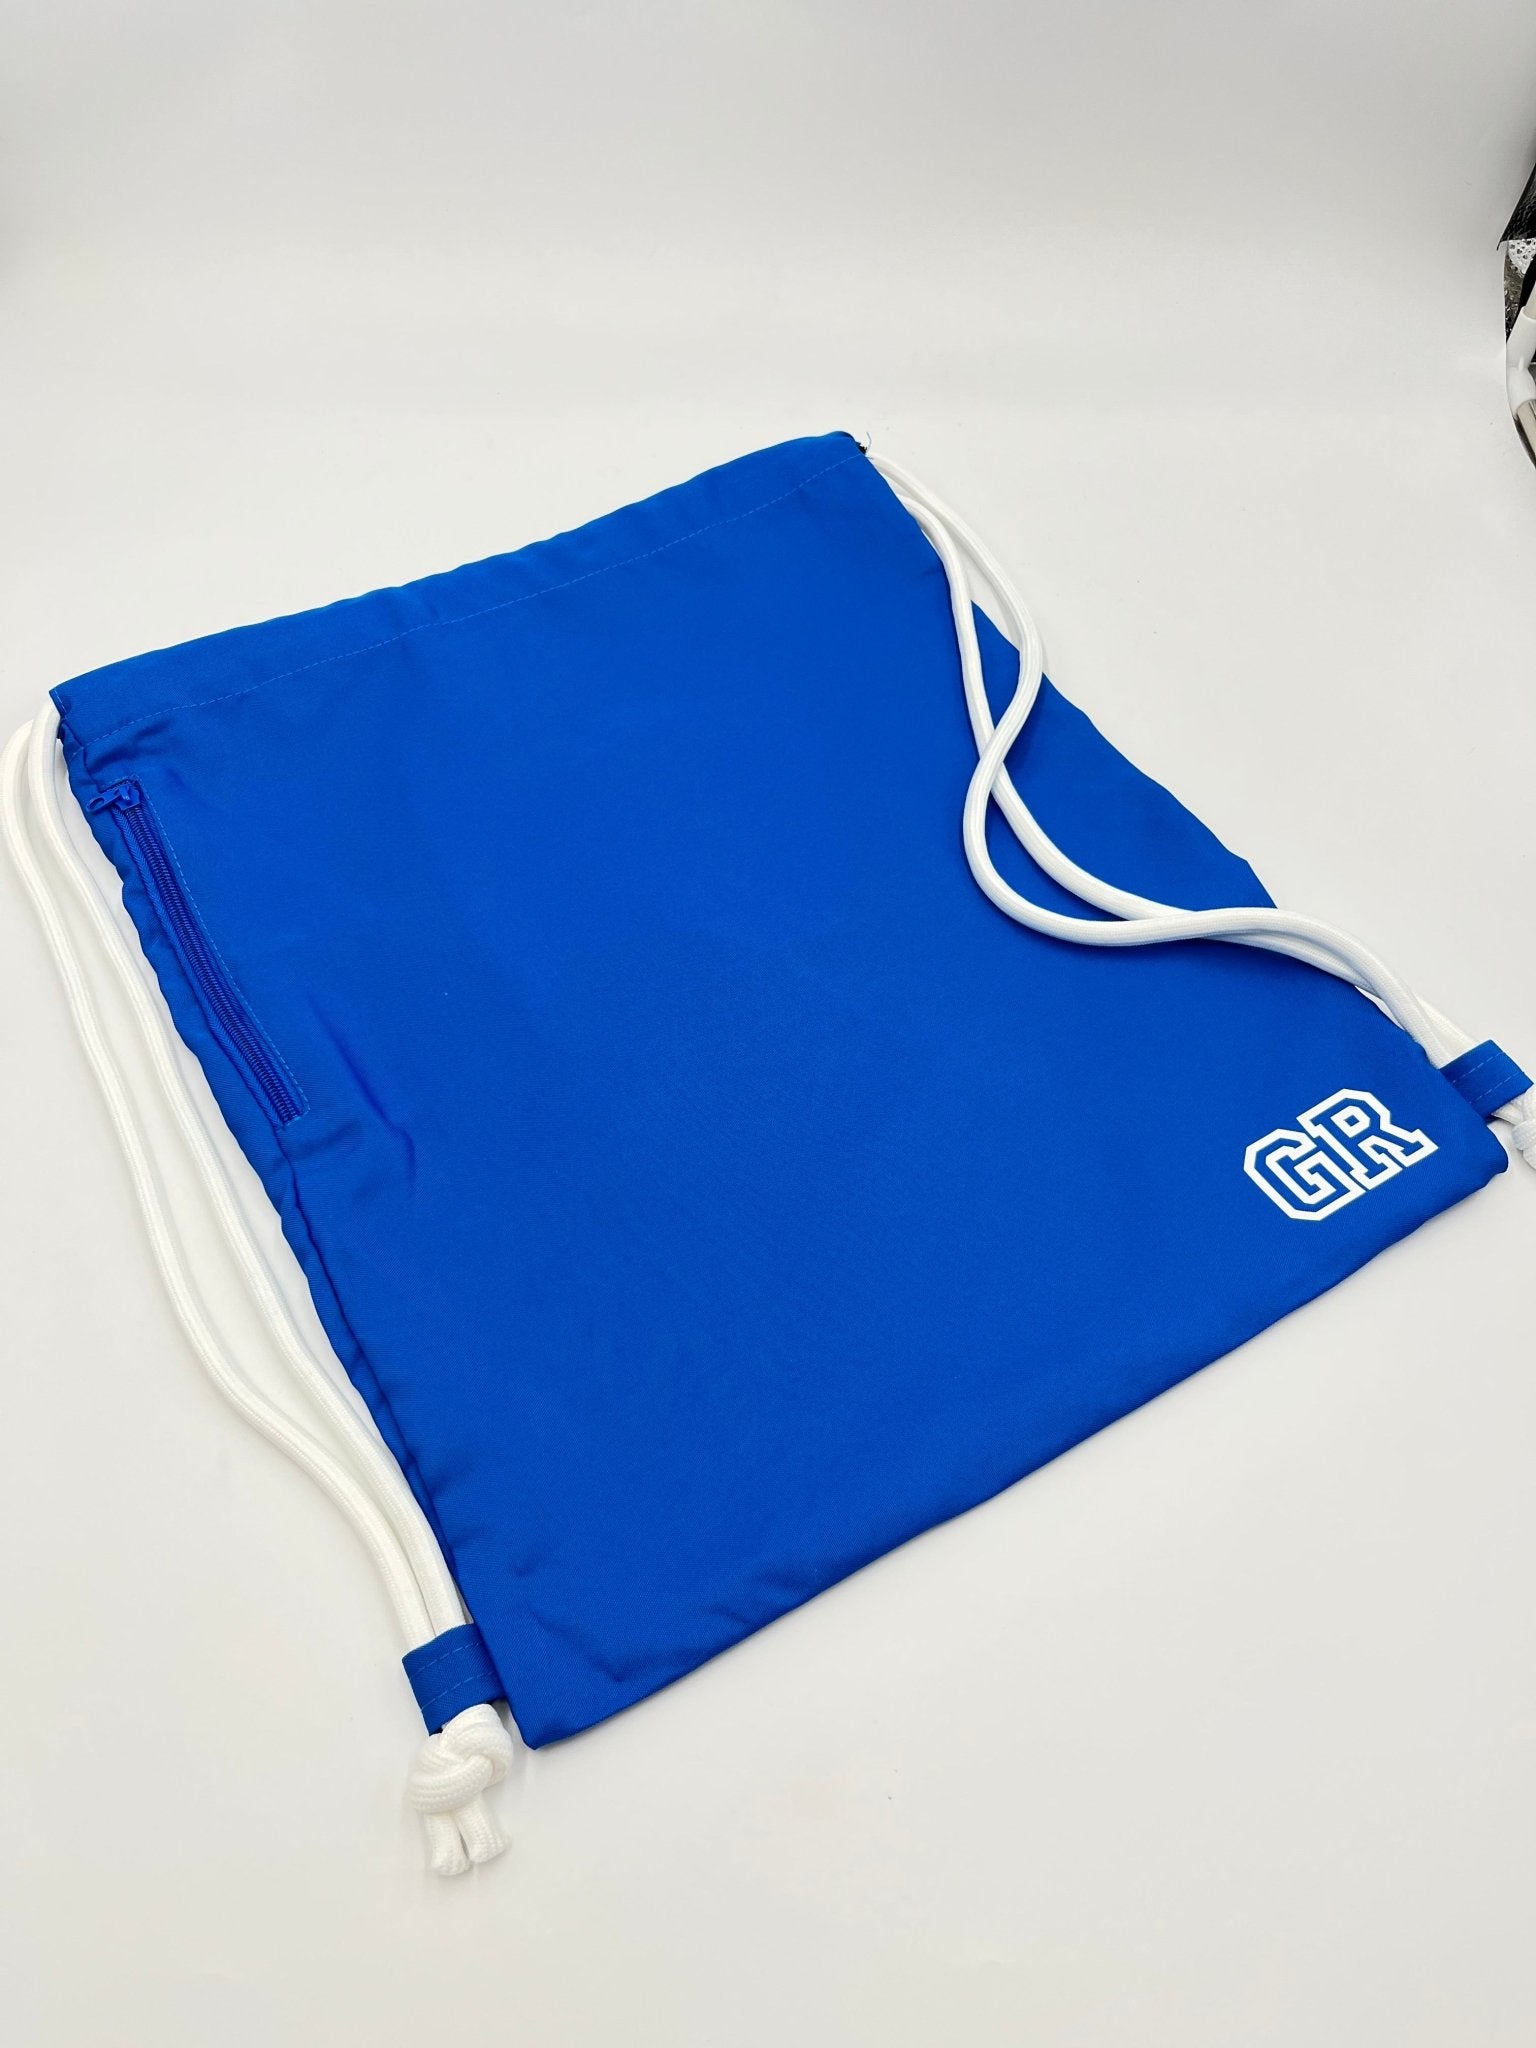 Personalised side zip drawstring bag - sweetassistant